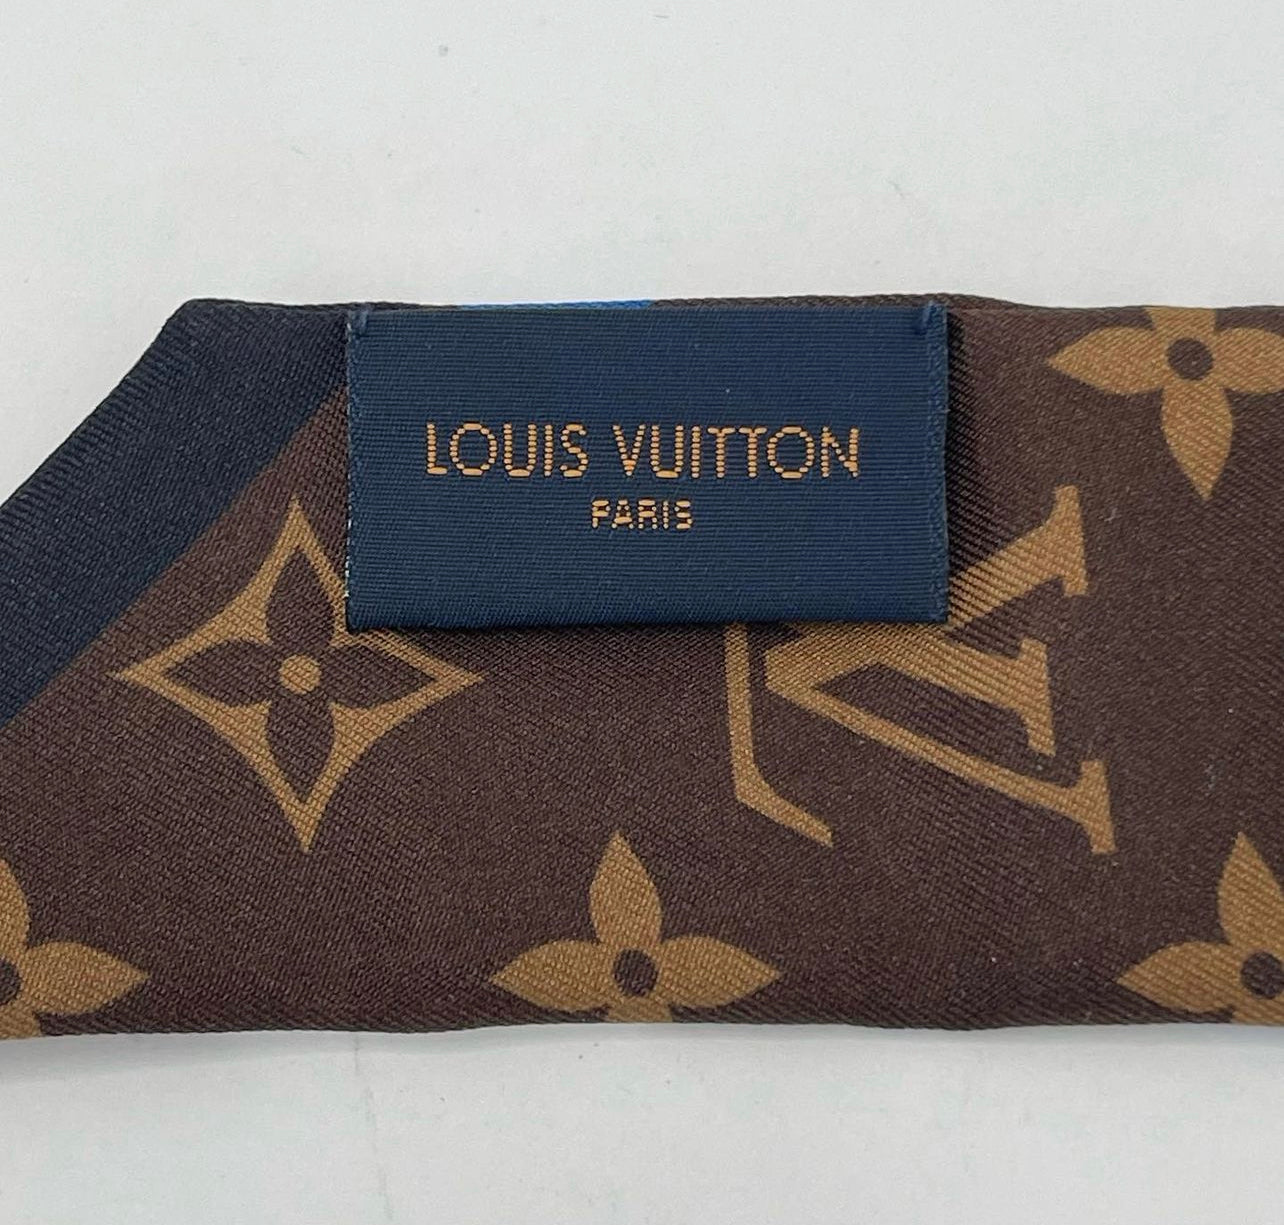 Louis Vuitton, Accessories, Louis Vuitton League Of Legends Limited  Edition Bb Bandeau